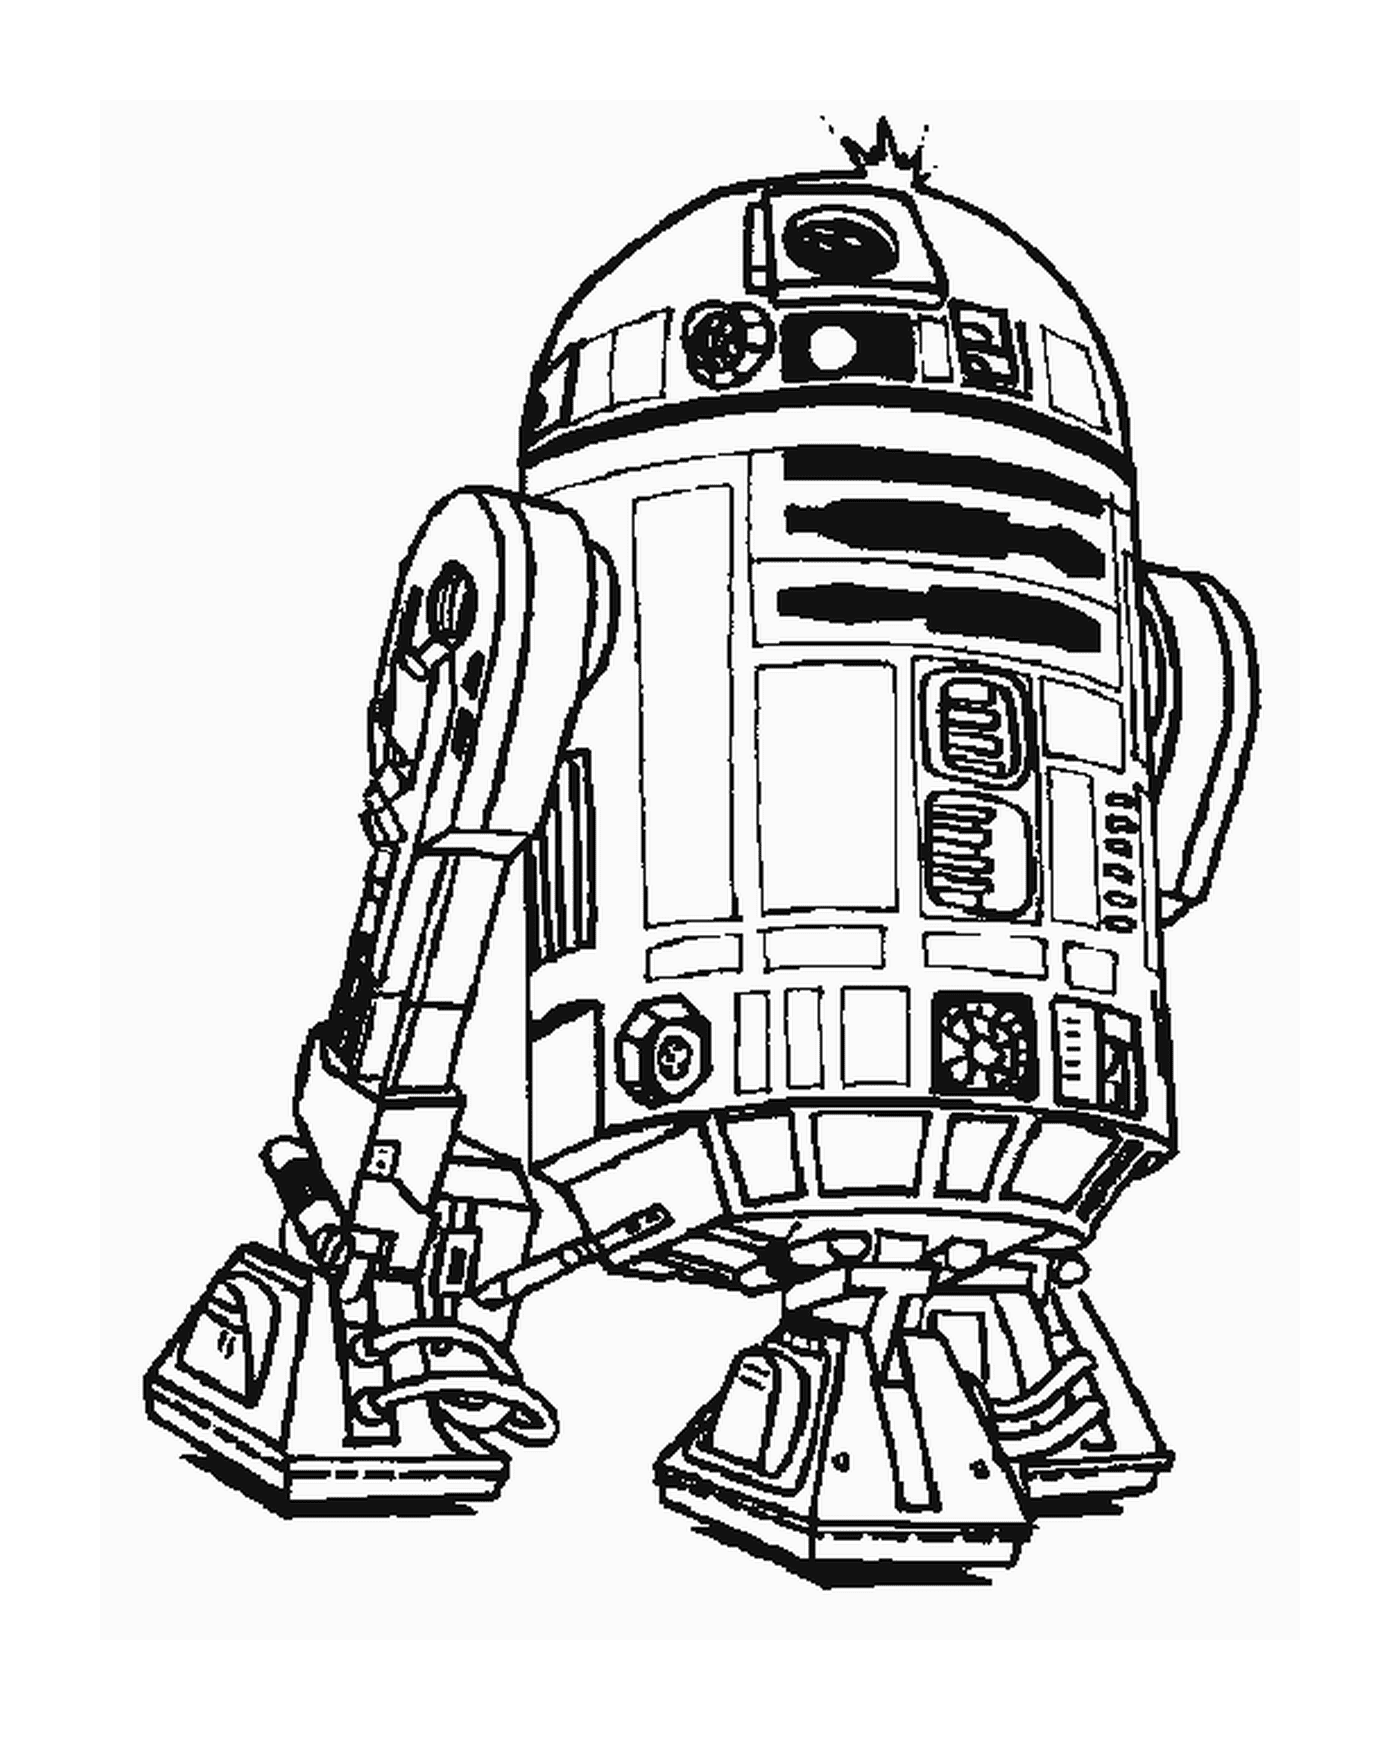  Чертеж робота R2-D2 